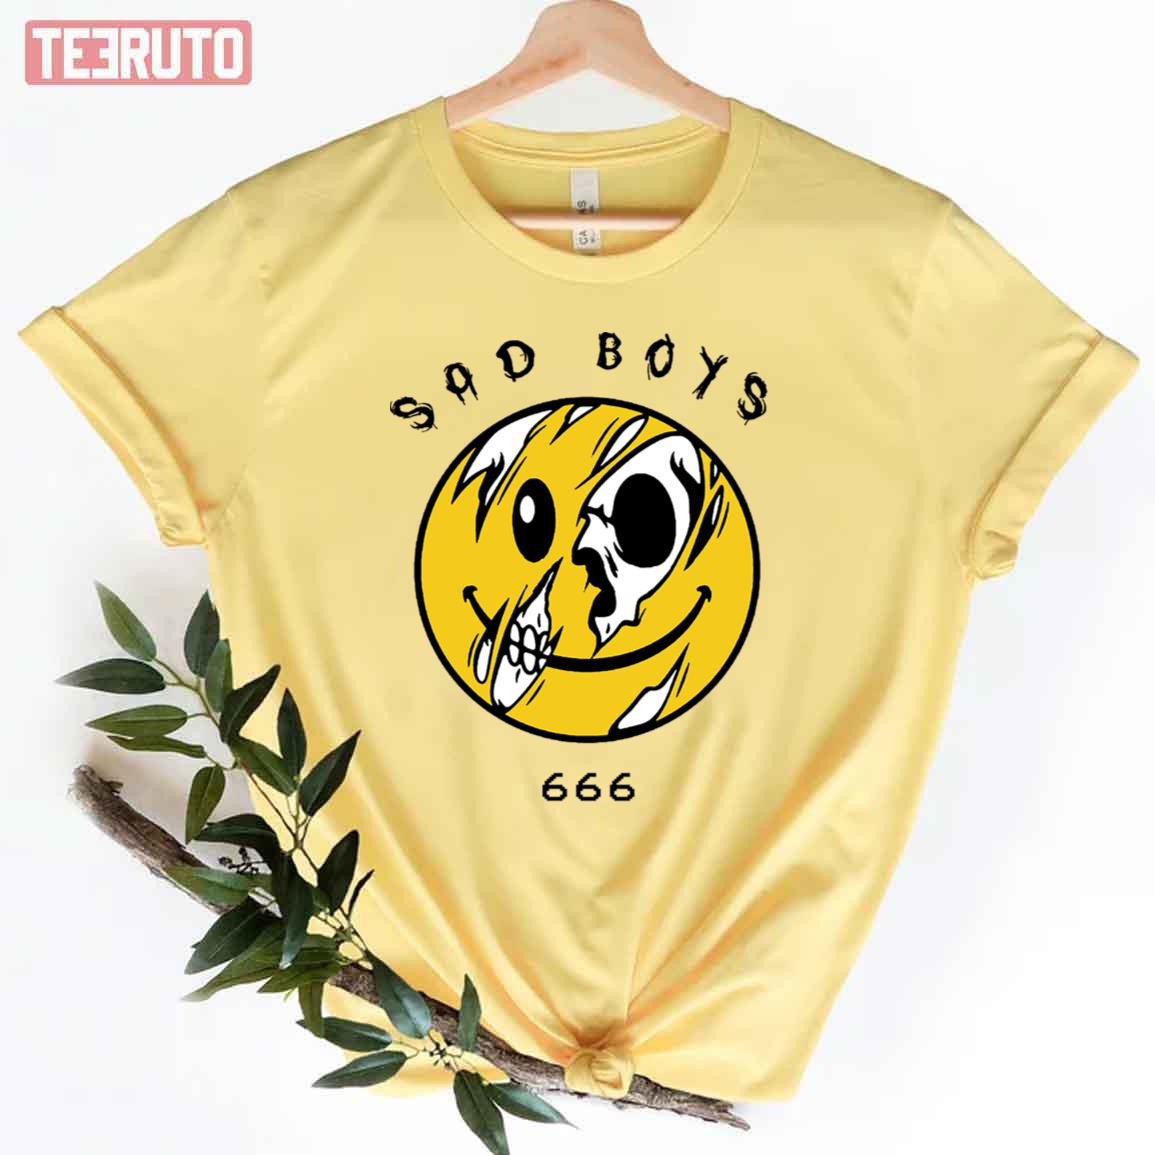 Sad Boys 666 Xavier Wulf Unisex T-Shirt